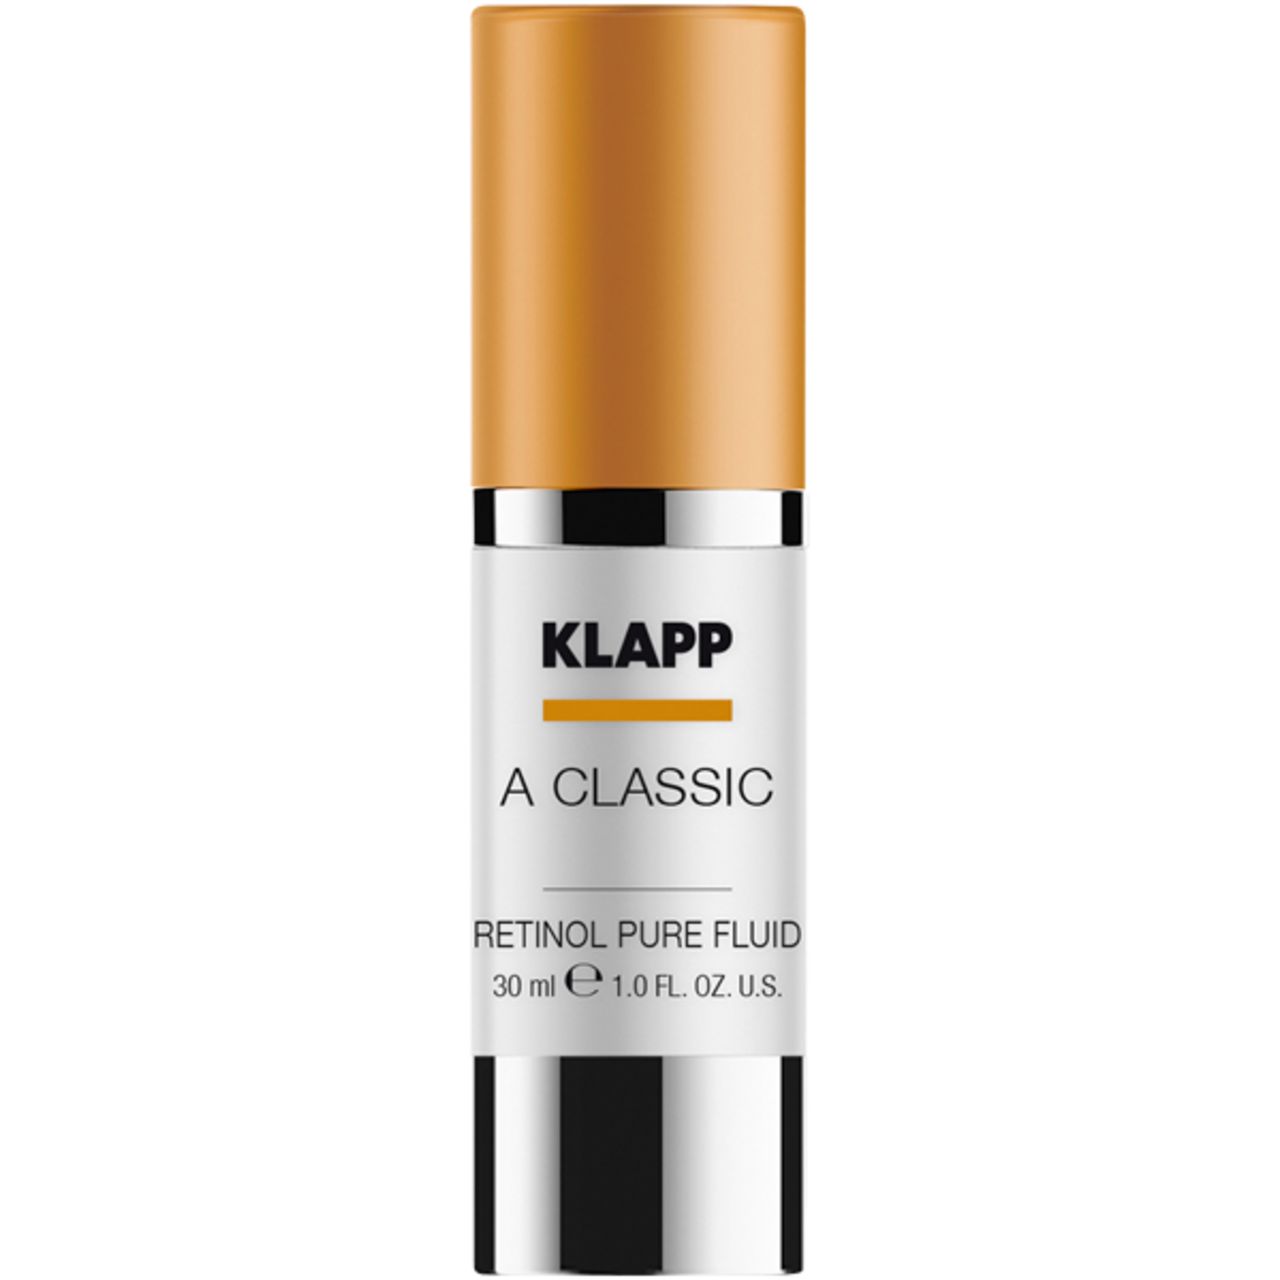 Klapp, A Classic  Retinol Pure Fluid